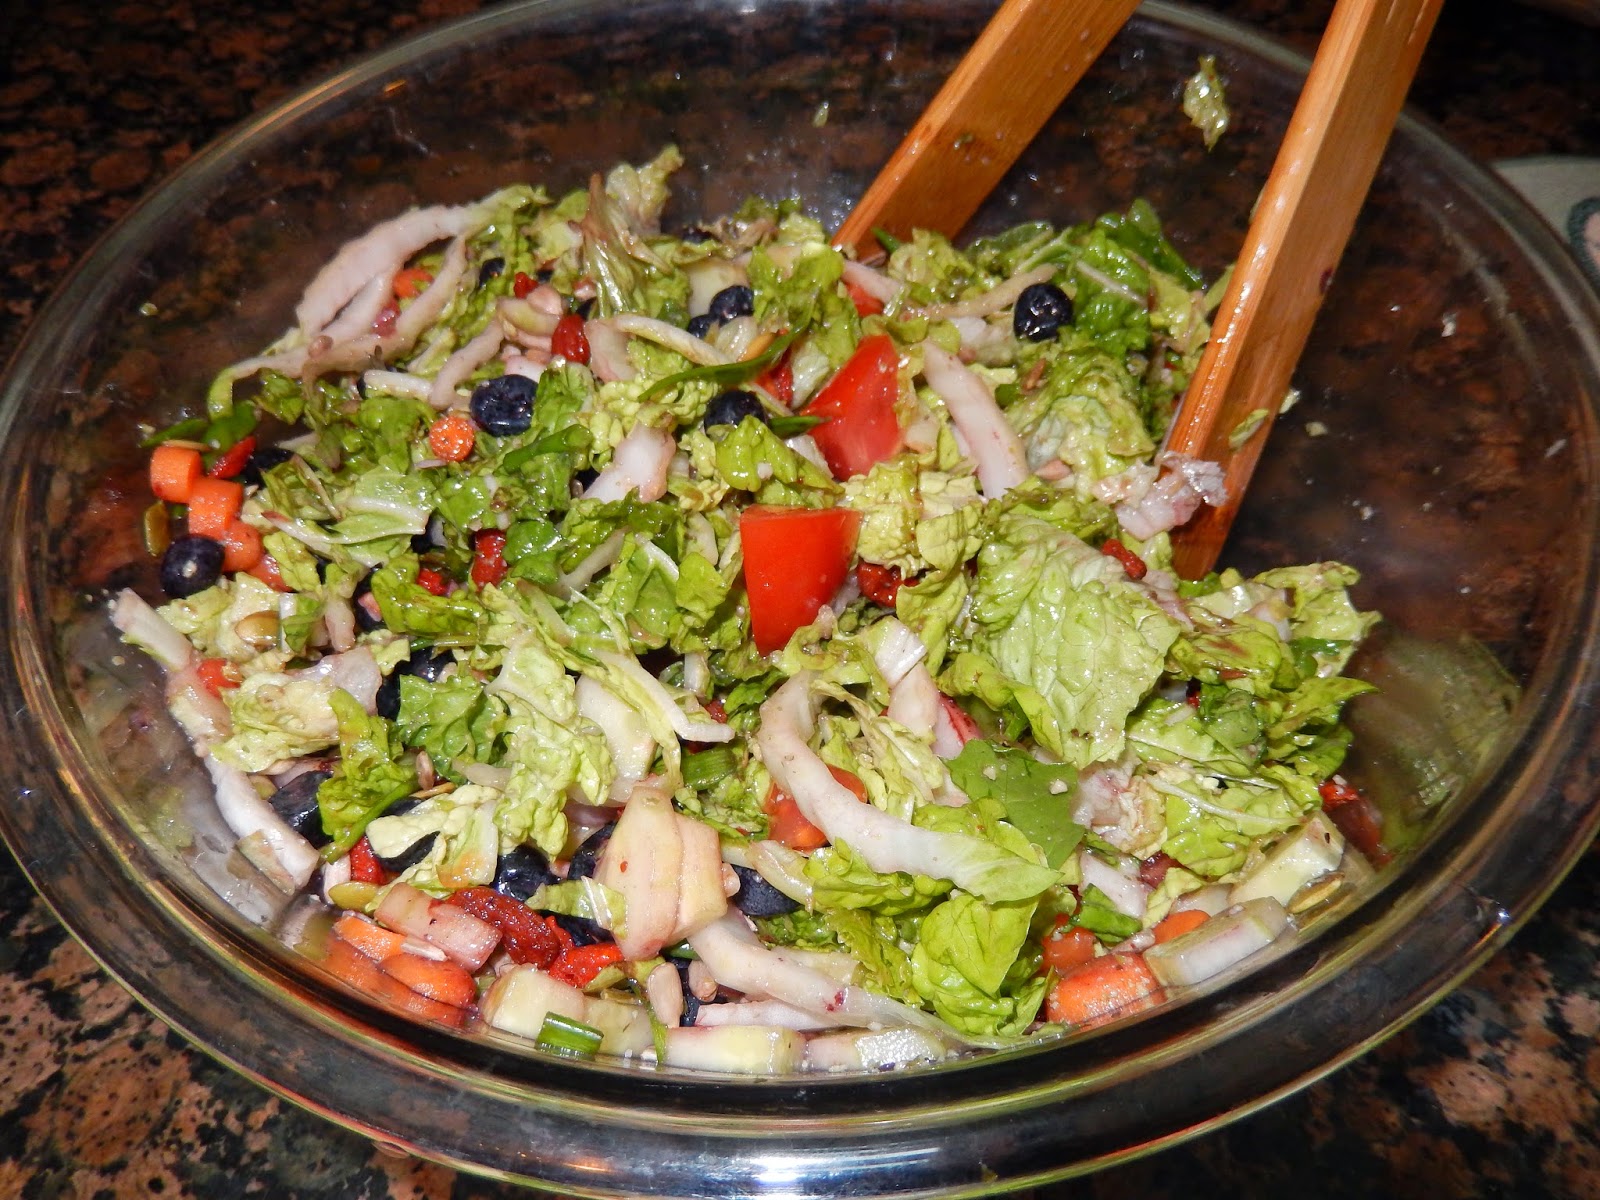 heal-thy self: Wholefoods Superfood Salad